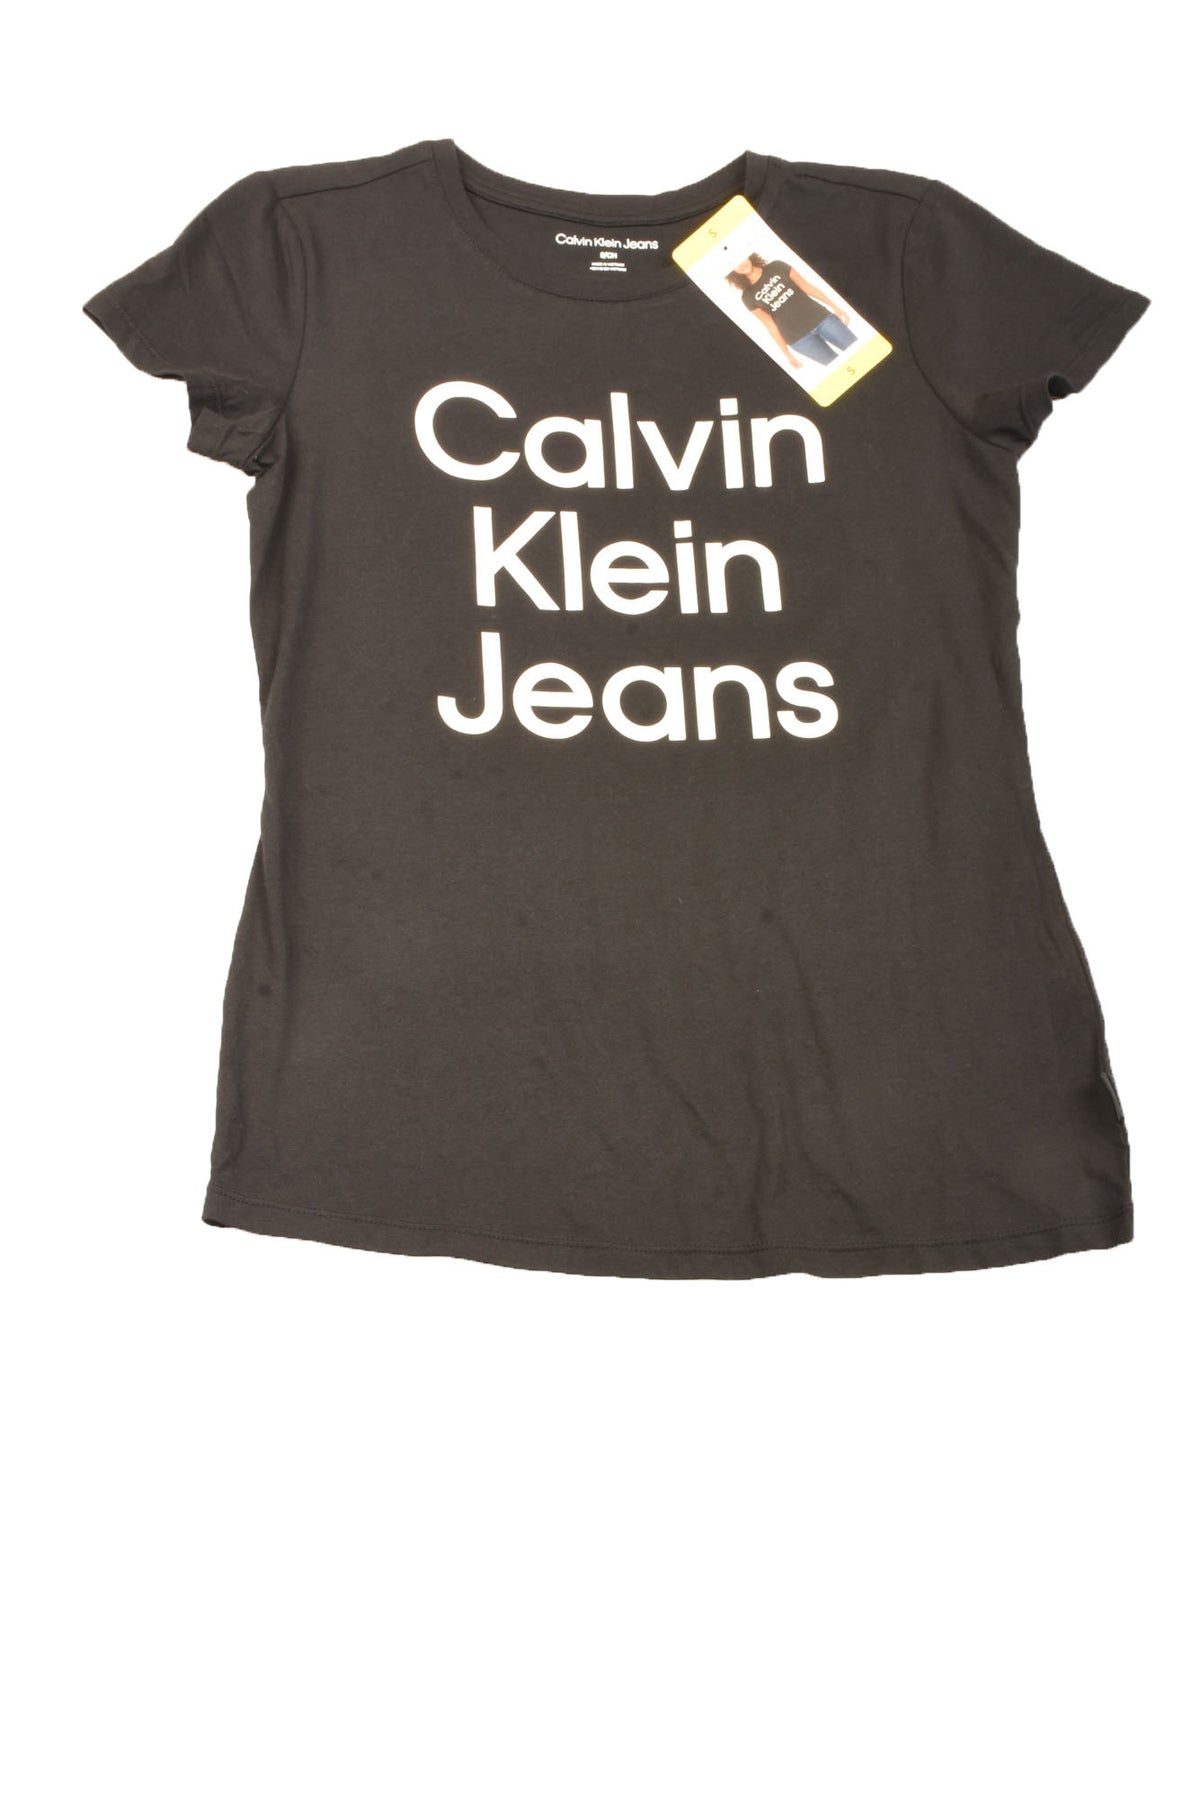 Calvin Klein Size Small Women&#39;s Top